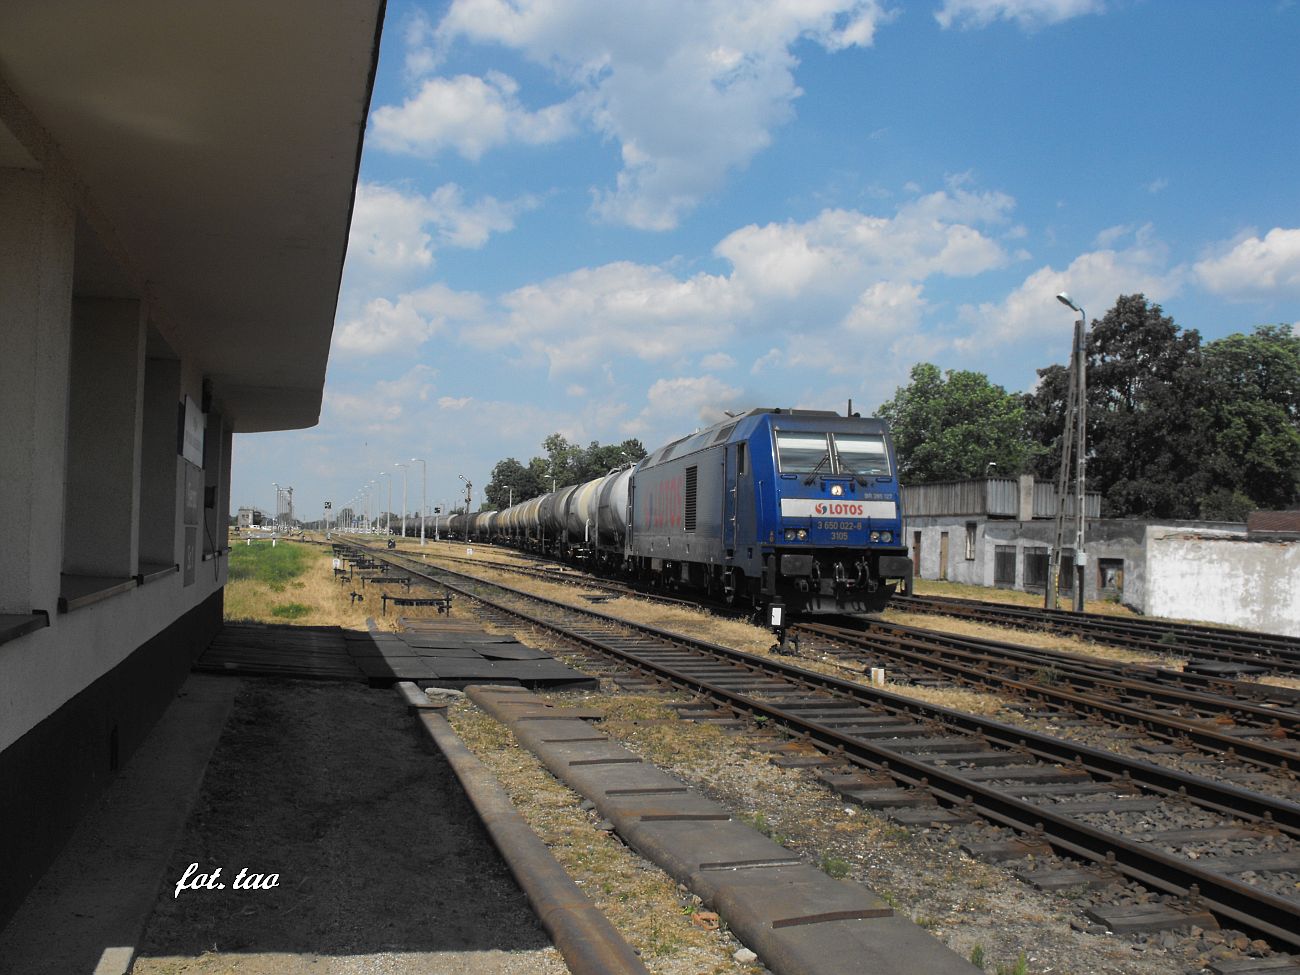 Stacja Sierpc. Skład towarowy został skierowany na tor w kierunku Płocka. Na czele składu nowoczesna lokomotywa 